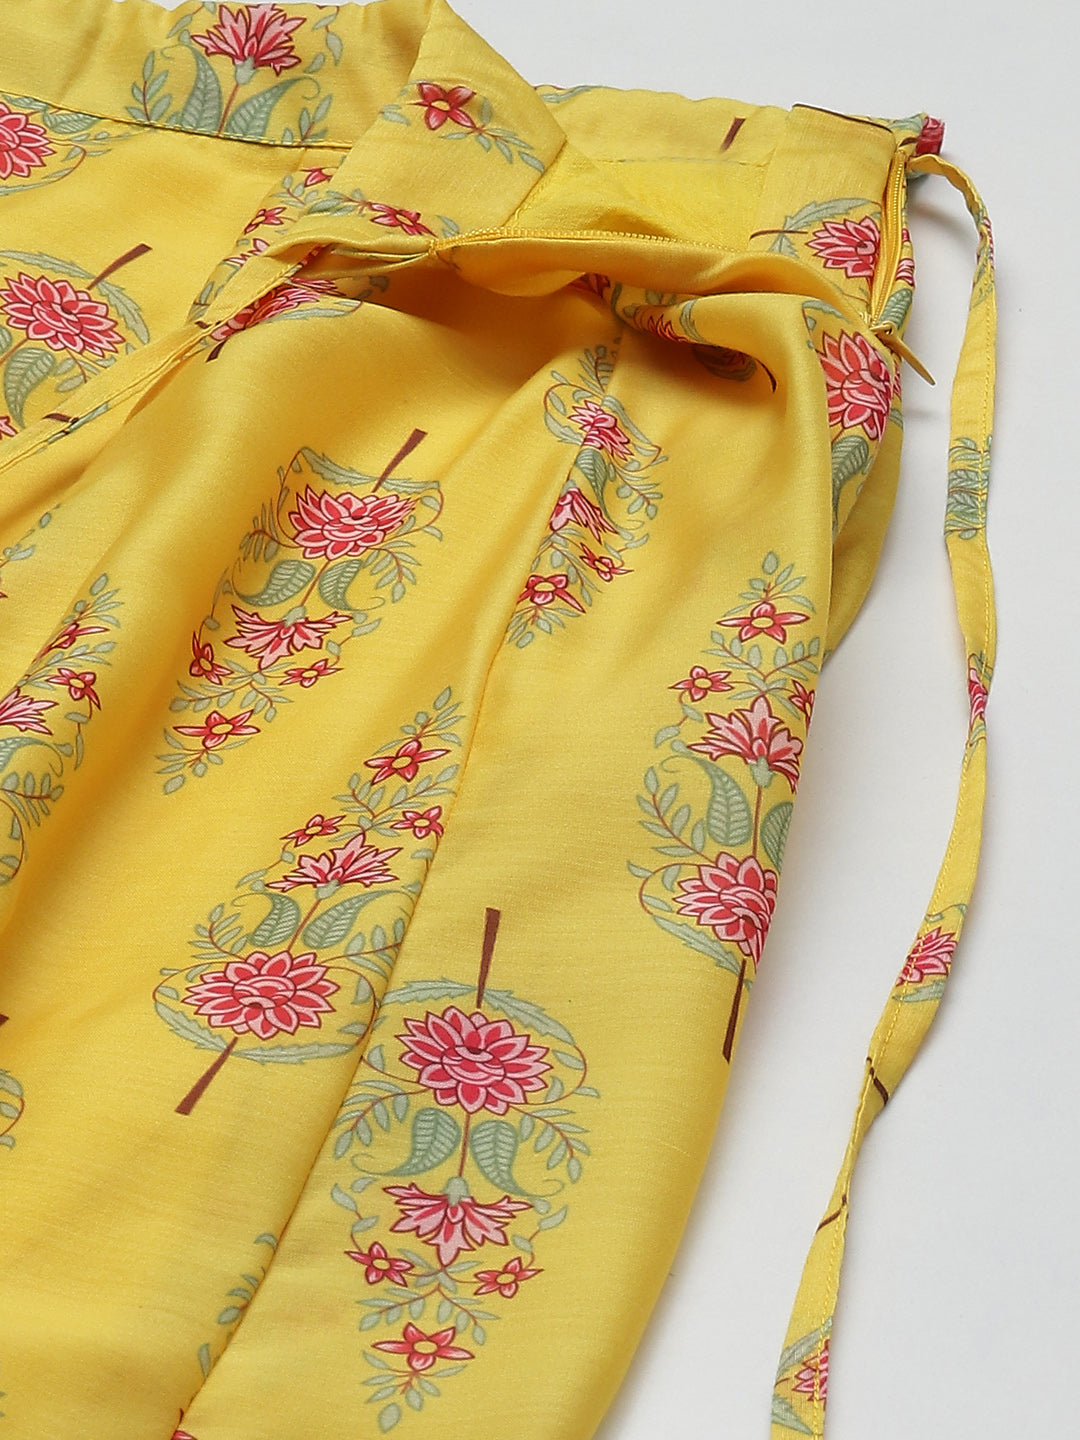 Women Yellow Chanderi Floral Crop Top With Aanrkali Skirt - NOZ2TOZ